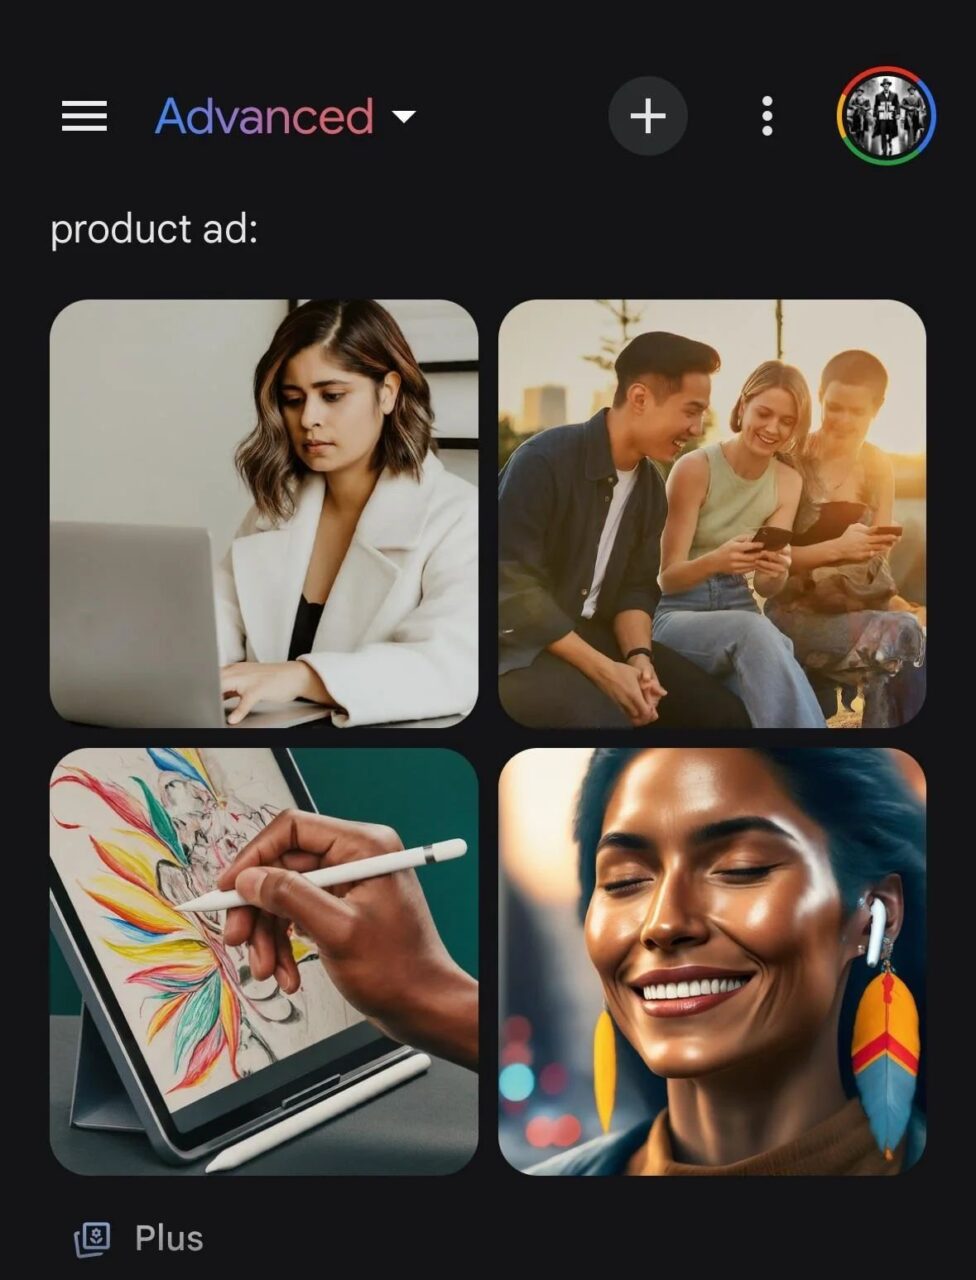 Interfejs aplikacji z czterema obrazami w tle: w lewym górnym rogu kobieta pracująca na laptopie, w prawym górnym rogu trzy osoby używające smartfona, w lewym dolnym rogu dłoń rysująca na tablecie graficznym i w prawym dolnym rogu uśmiechnięta kobieta z kolczykiem w kształcie pióra, wygenerowane w Google Gemini Advanced.